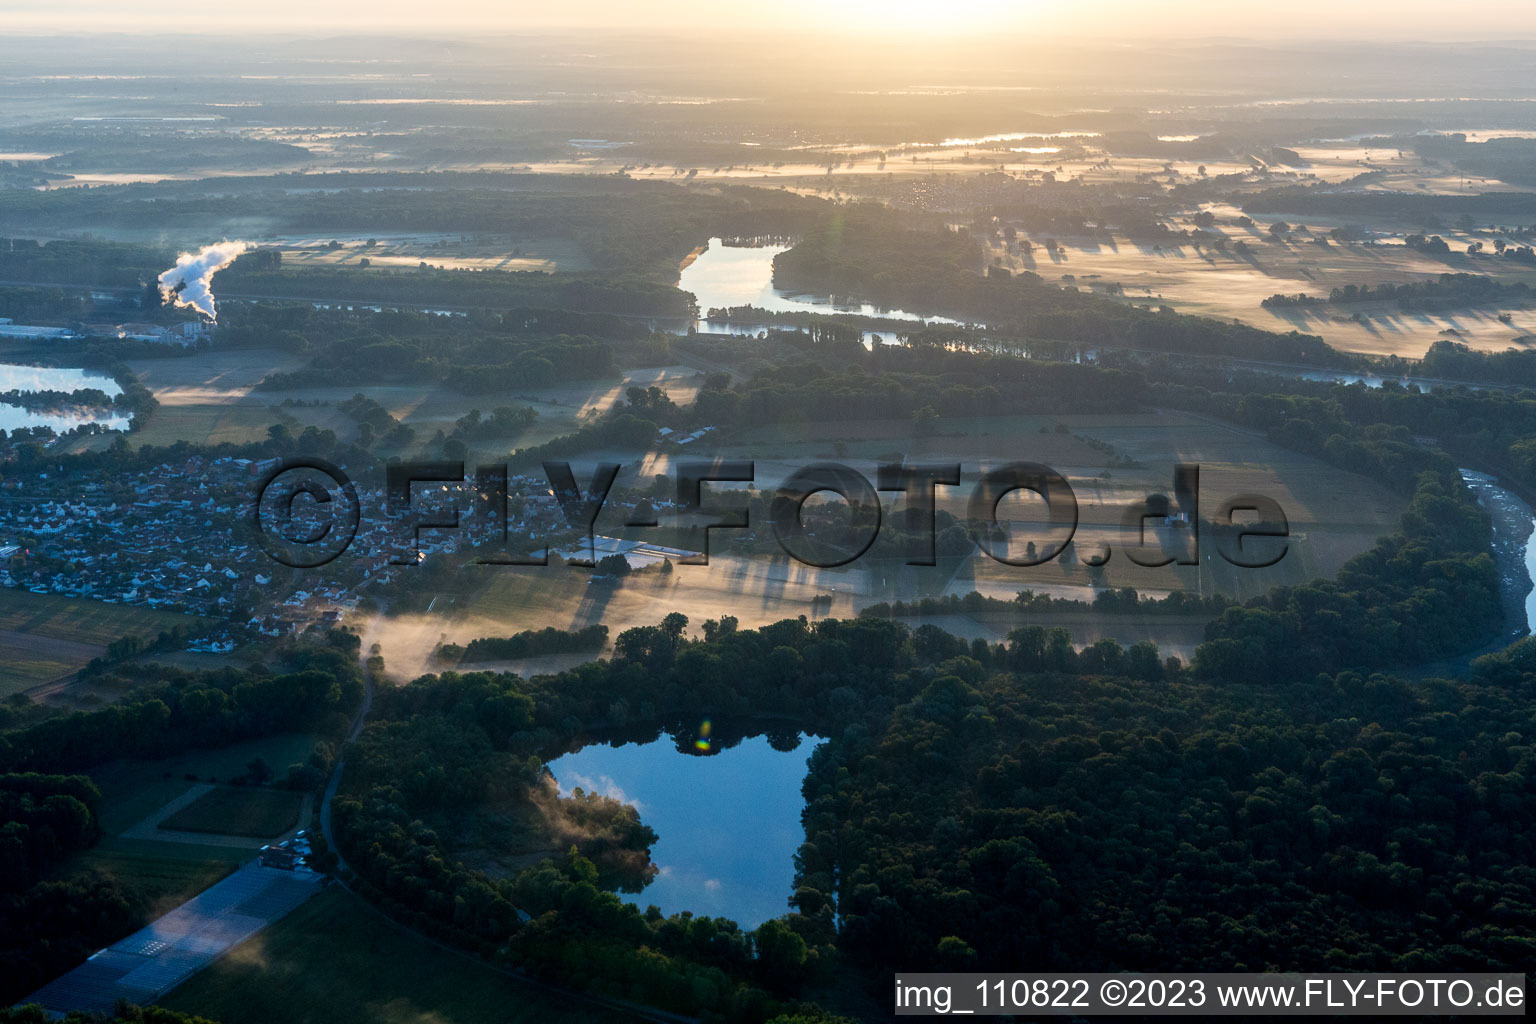 Ortsteil Sondernheim in Germersheim im Bundesland Rheinland-Pfalz, Deutschland aus der Luft betrachtet